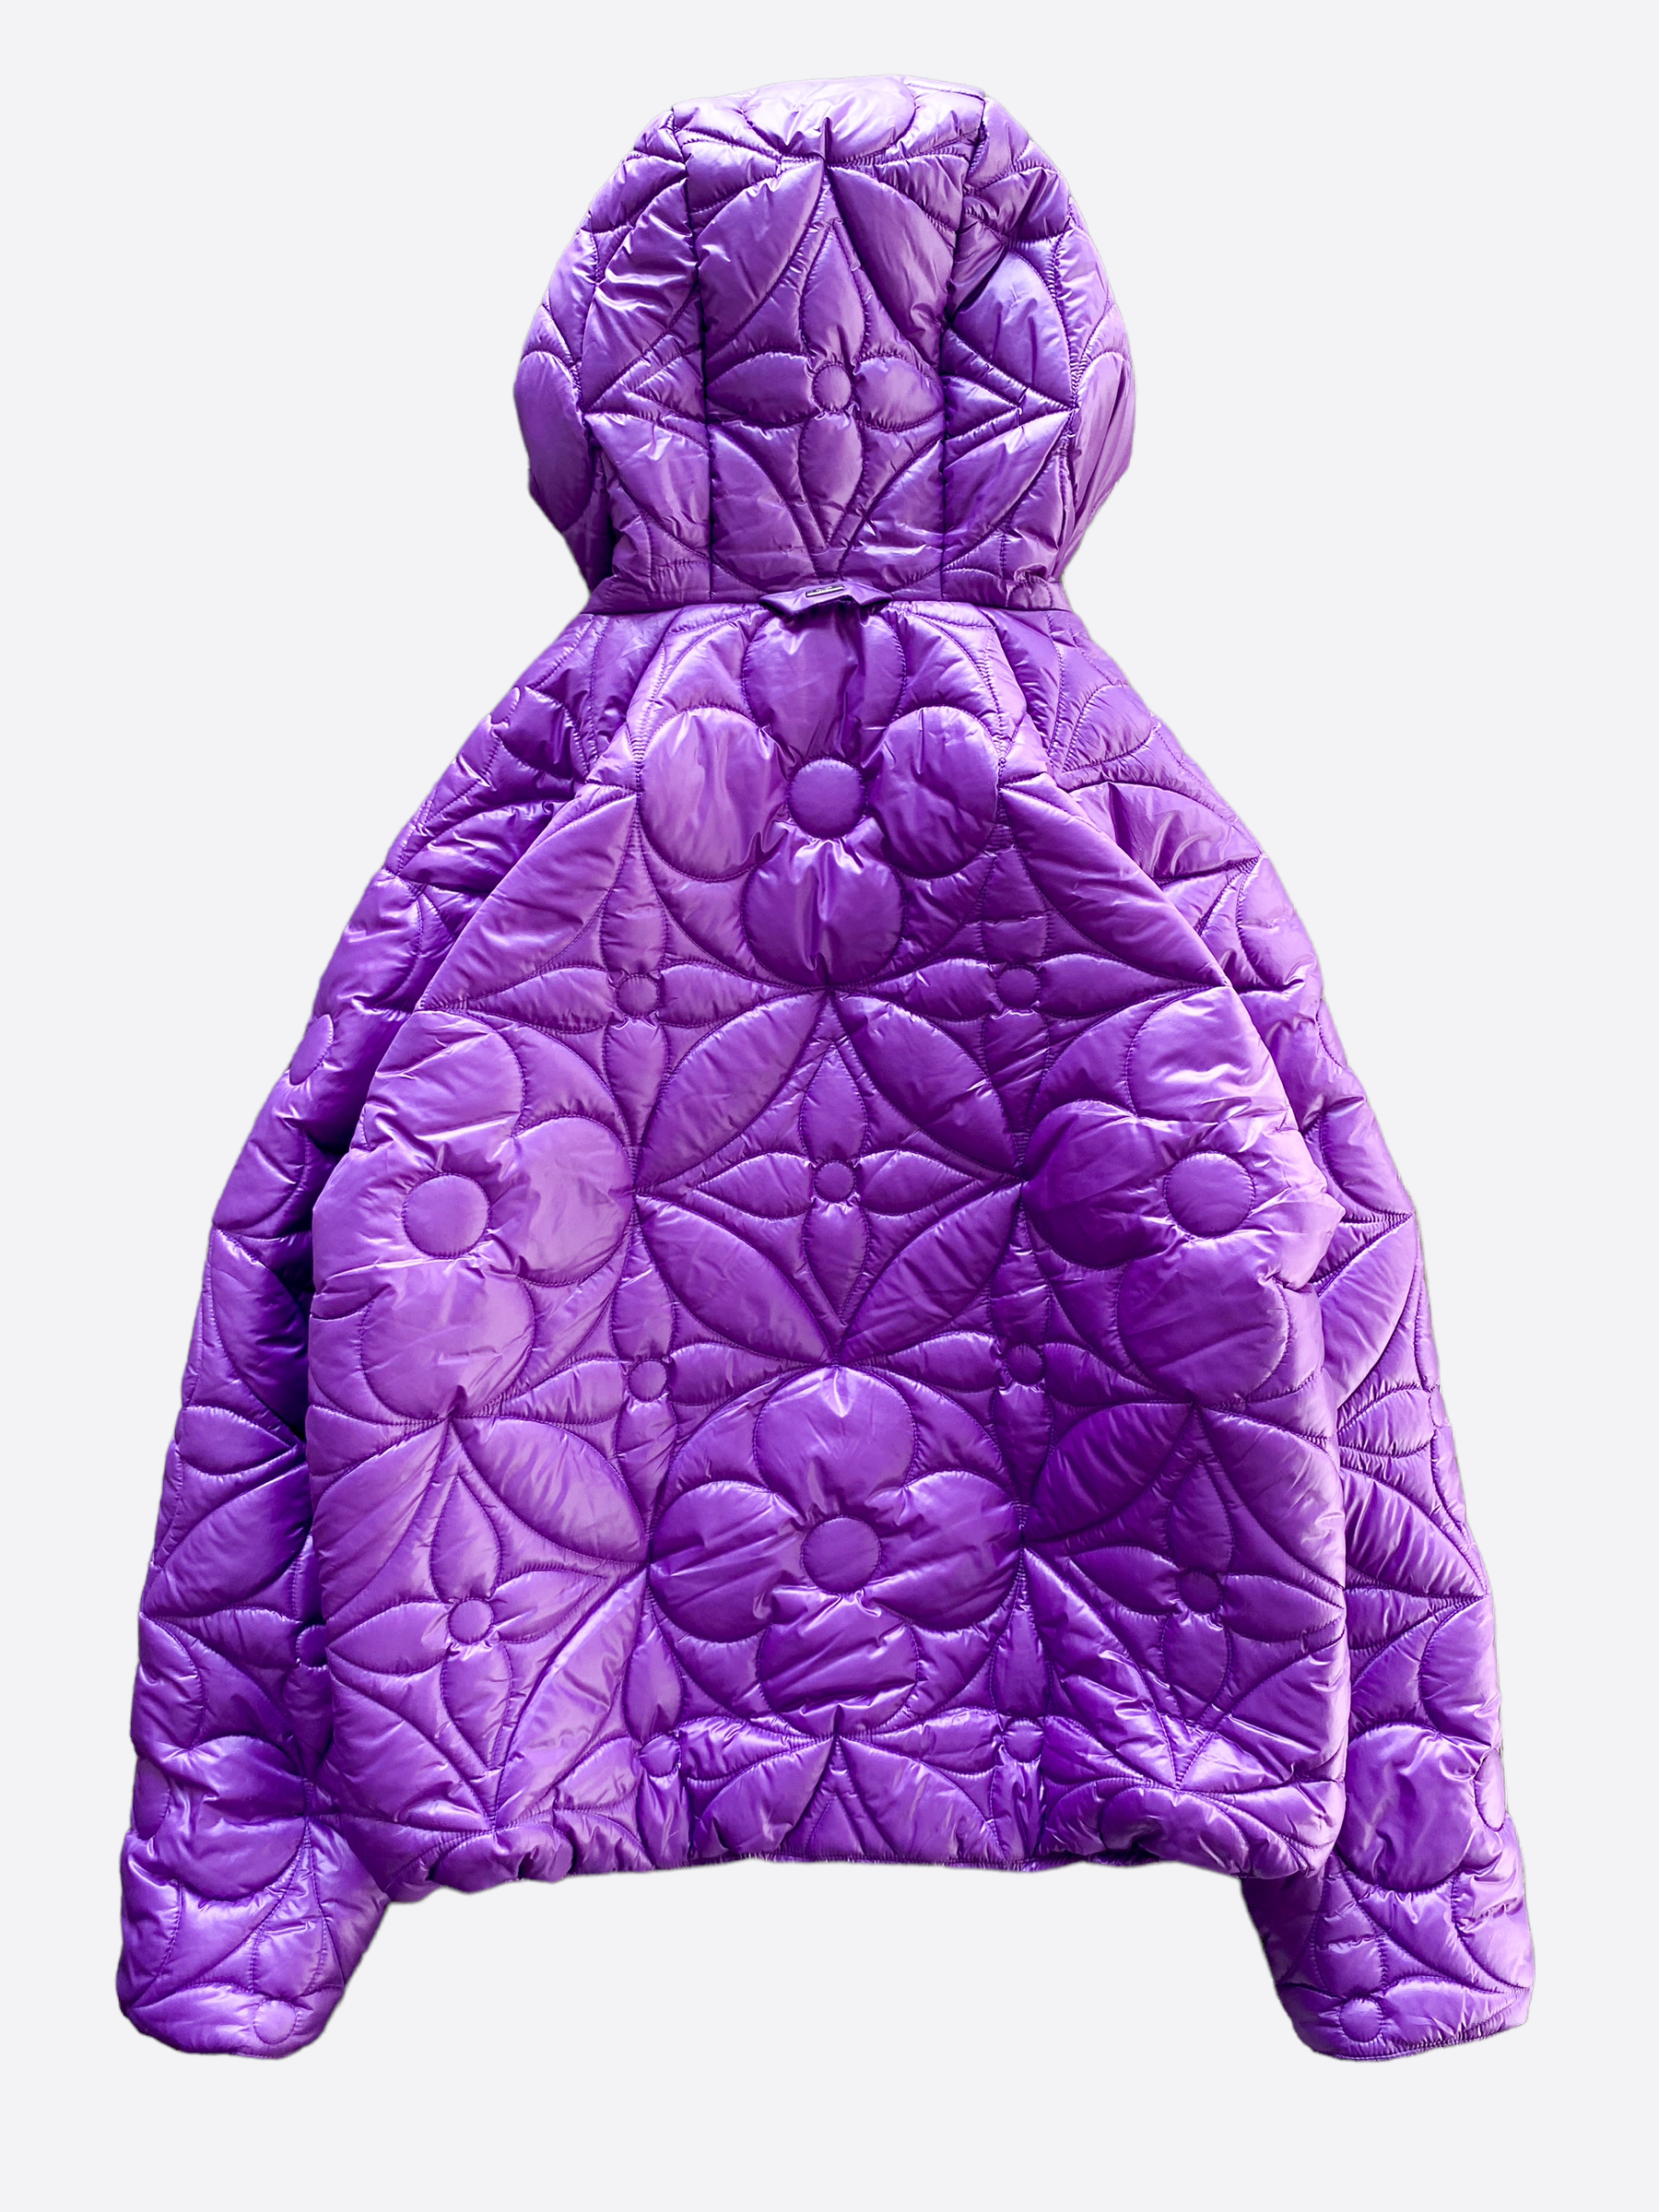 Louis Vuitton Workwear Monogram Embossed Suede Jacket, Purple, 56